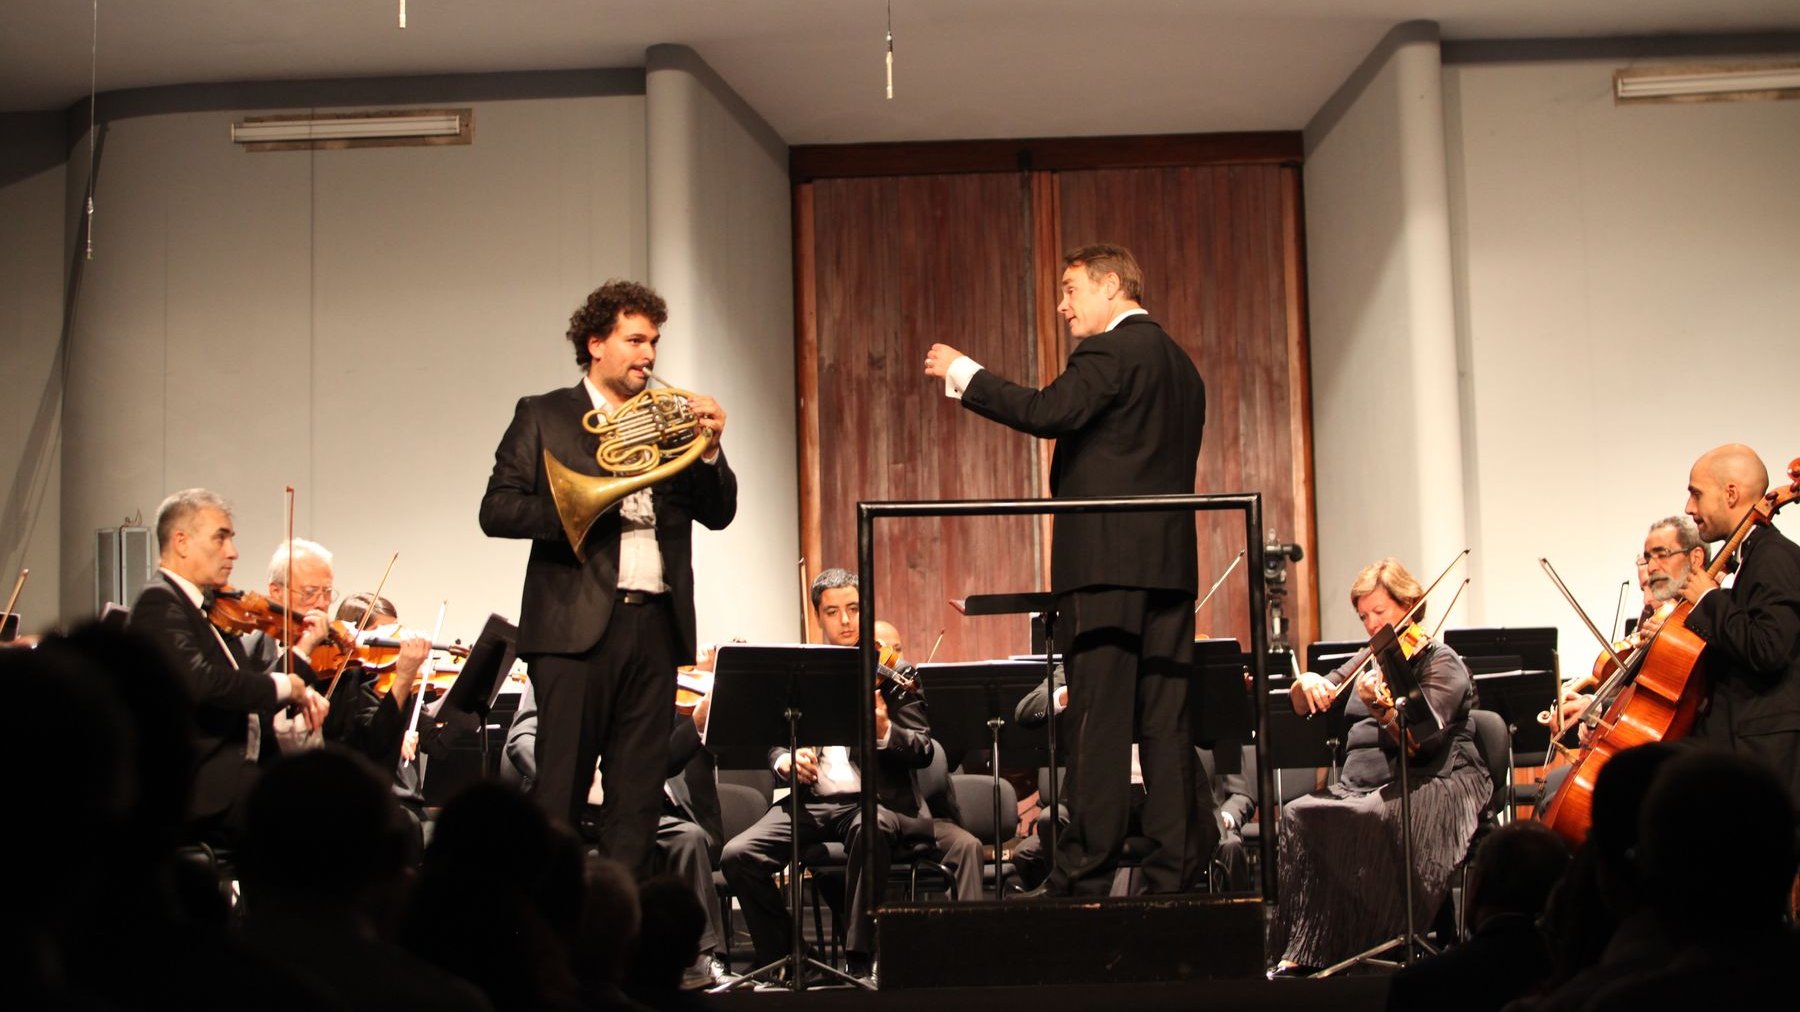 David Guerrier interprétera, durant ce concert, deux symphonies jouées avec une dextérité et une maîtrise technique remarquables.
